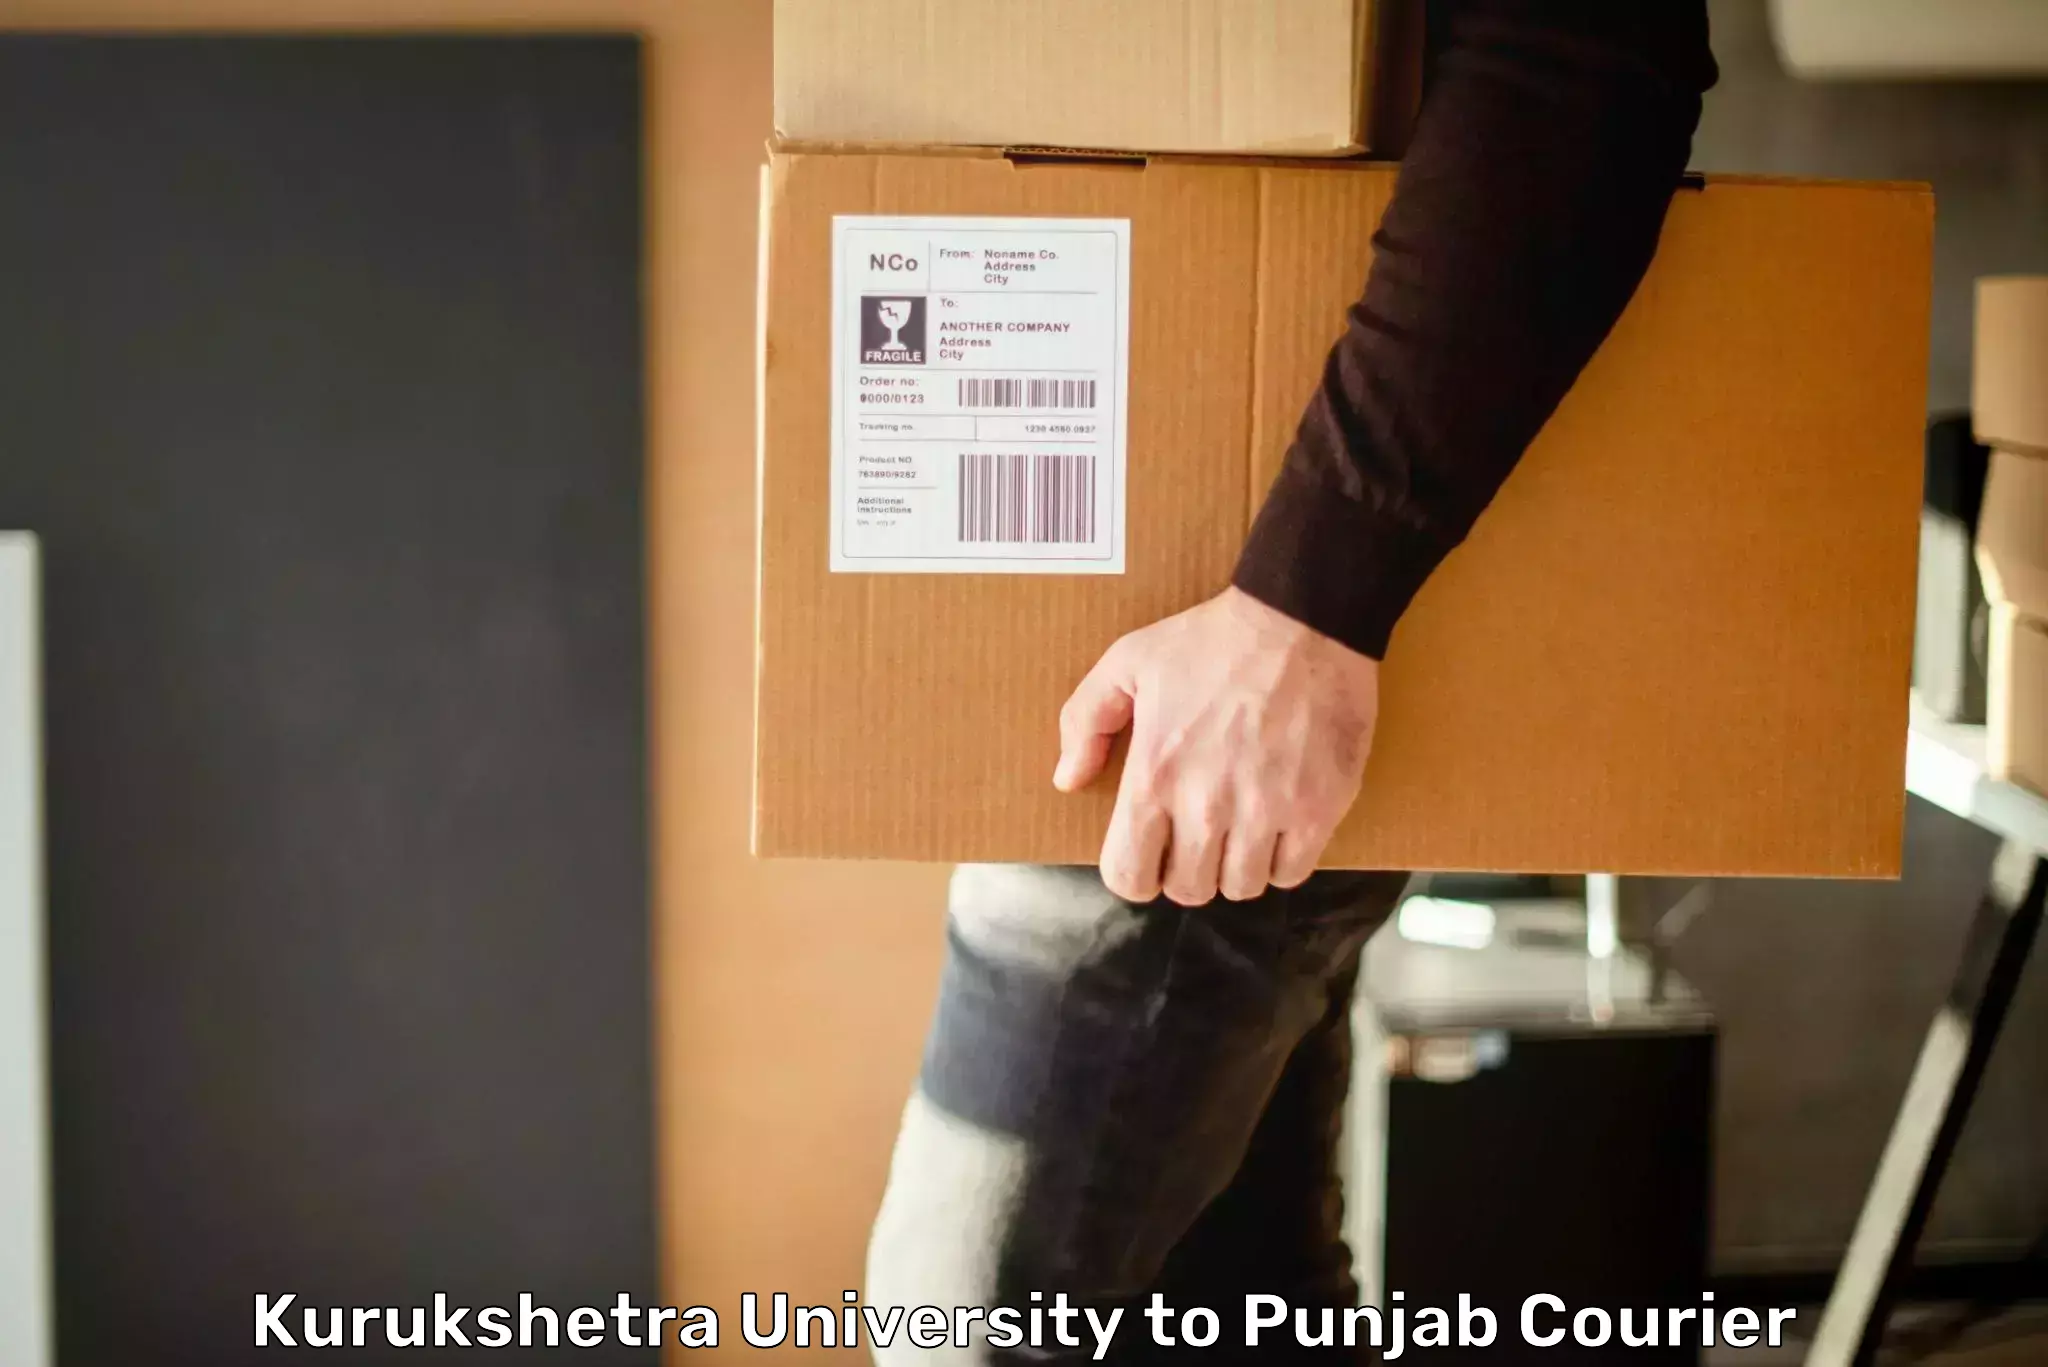 Global shipping solutions Kurukshetra University to Nawanshahr